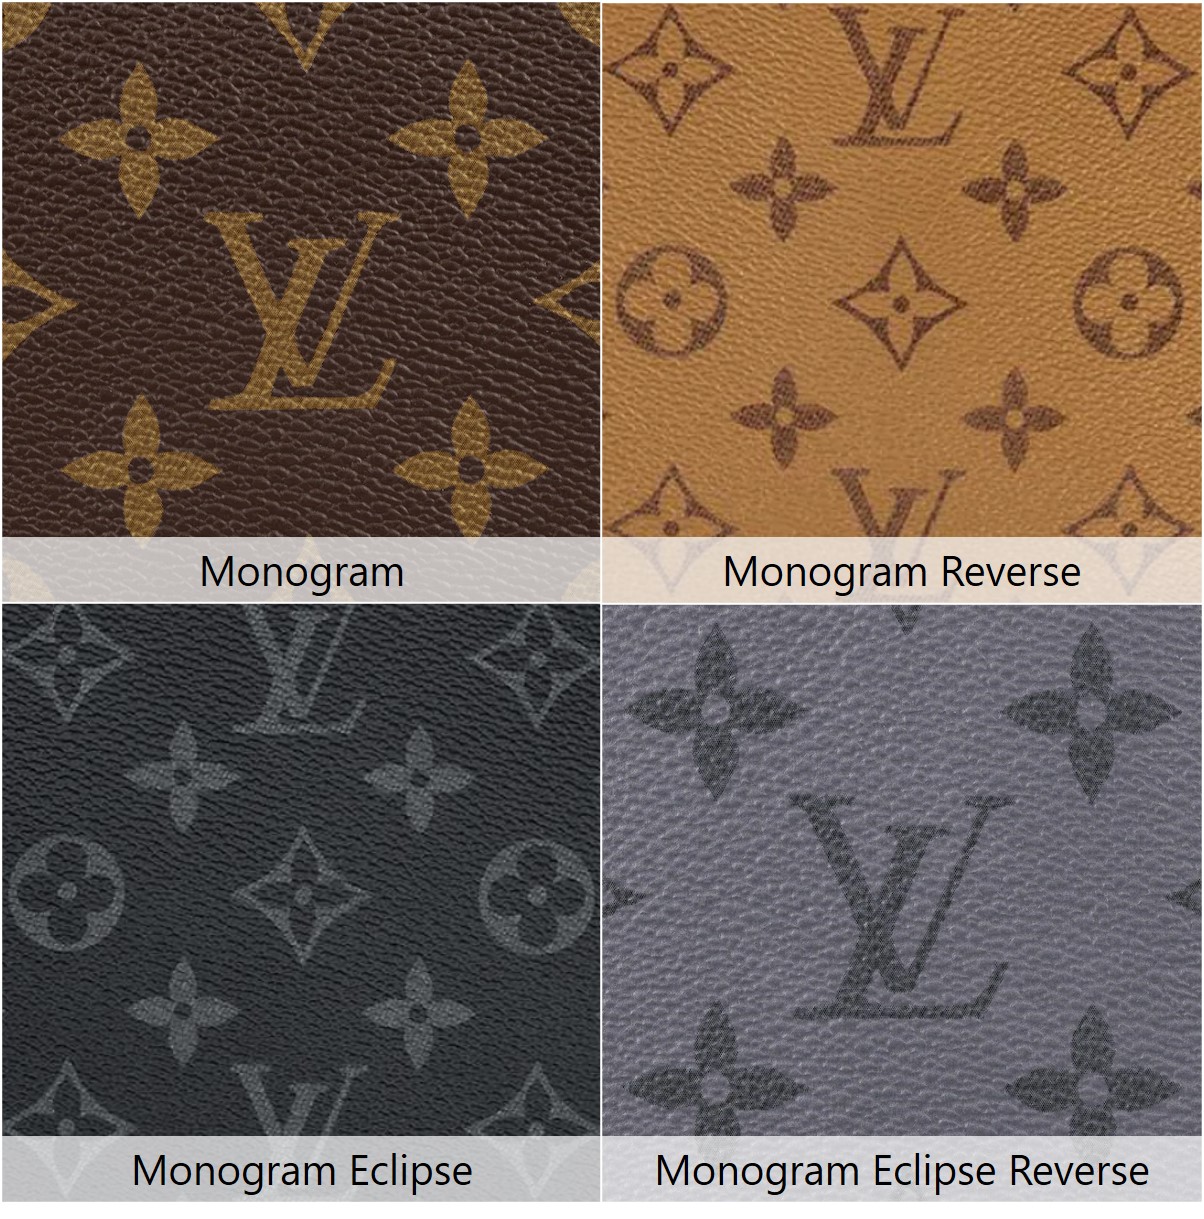 Louis Vuitton Monogram Canvas Colour and Pattern - Miss Bugis